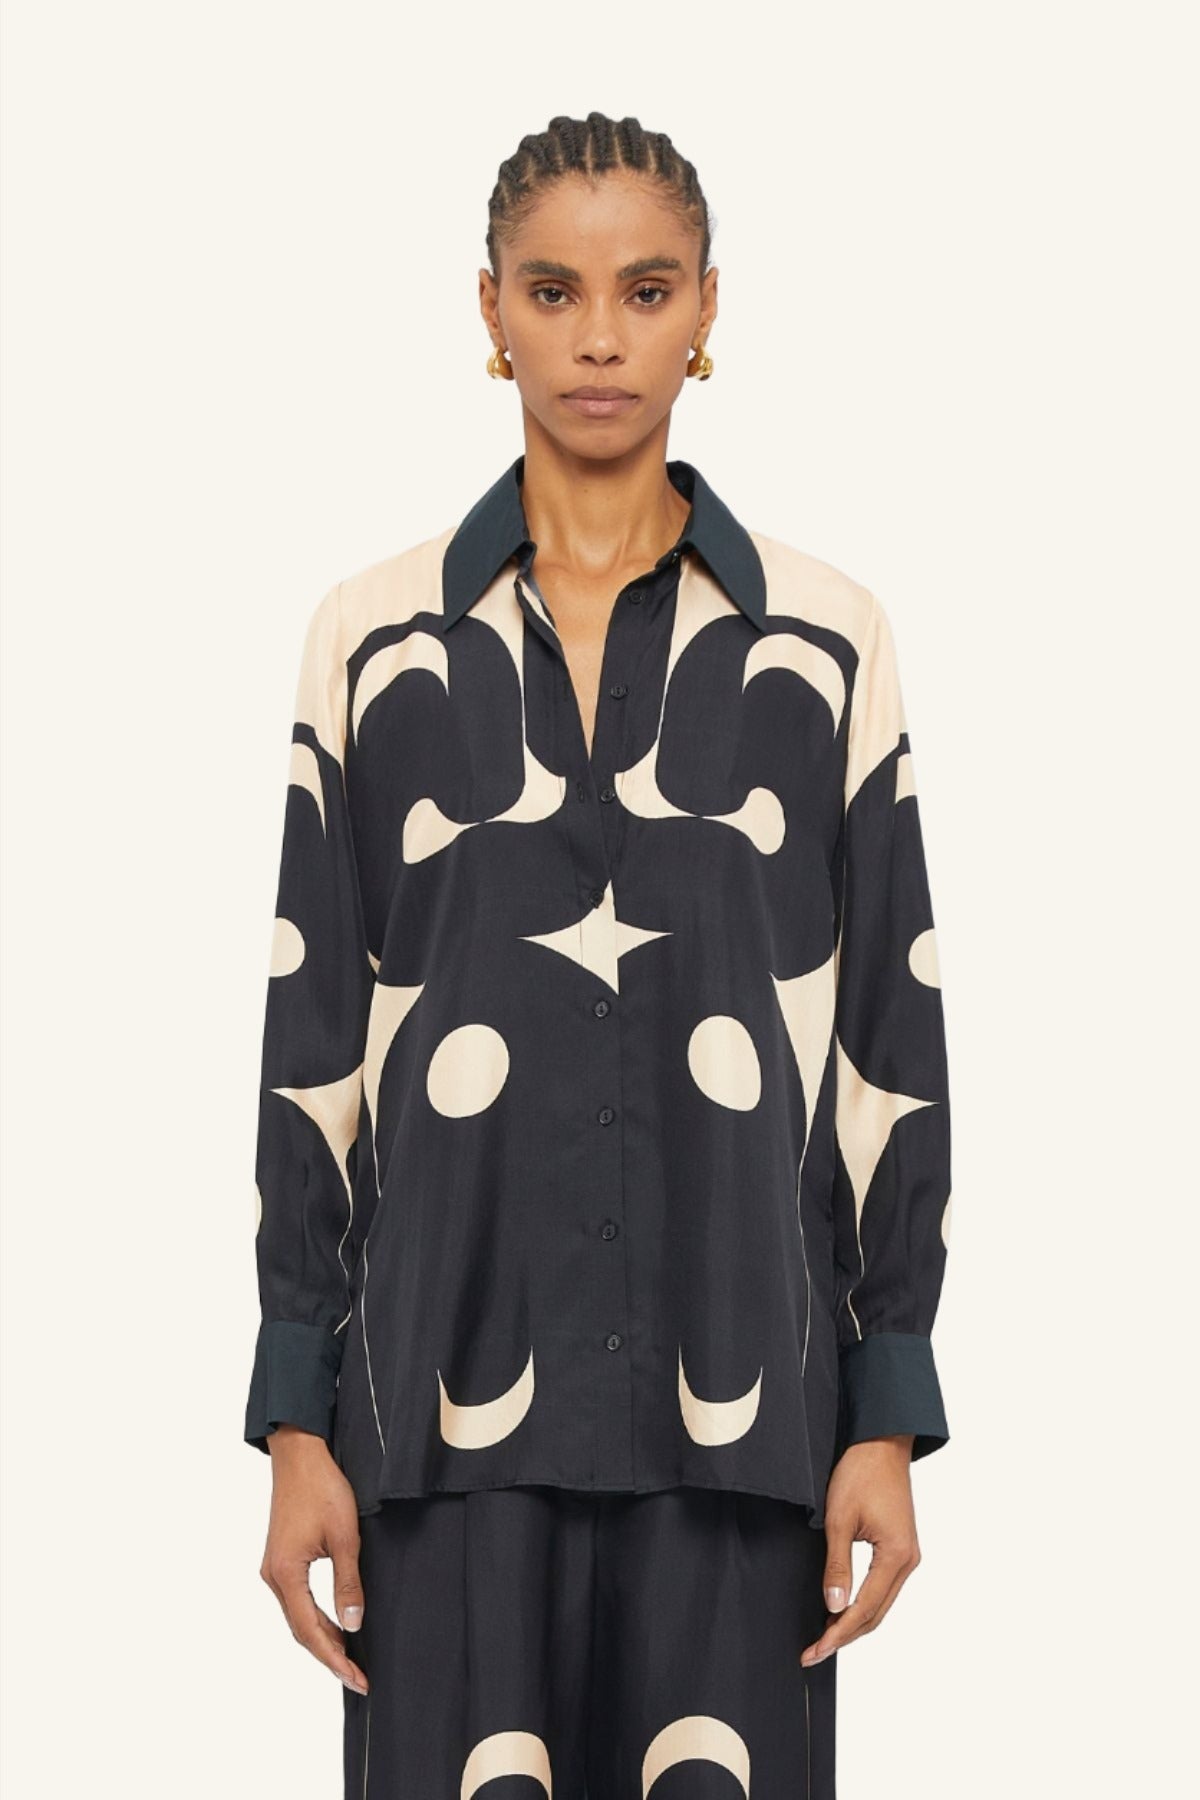 Australian women's designer Black and Cream Deco printed long sleeve Lucid blouse